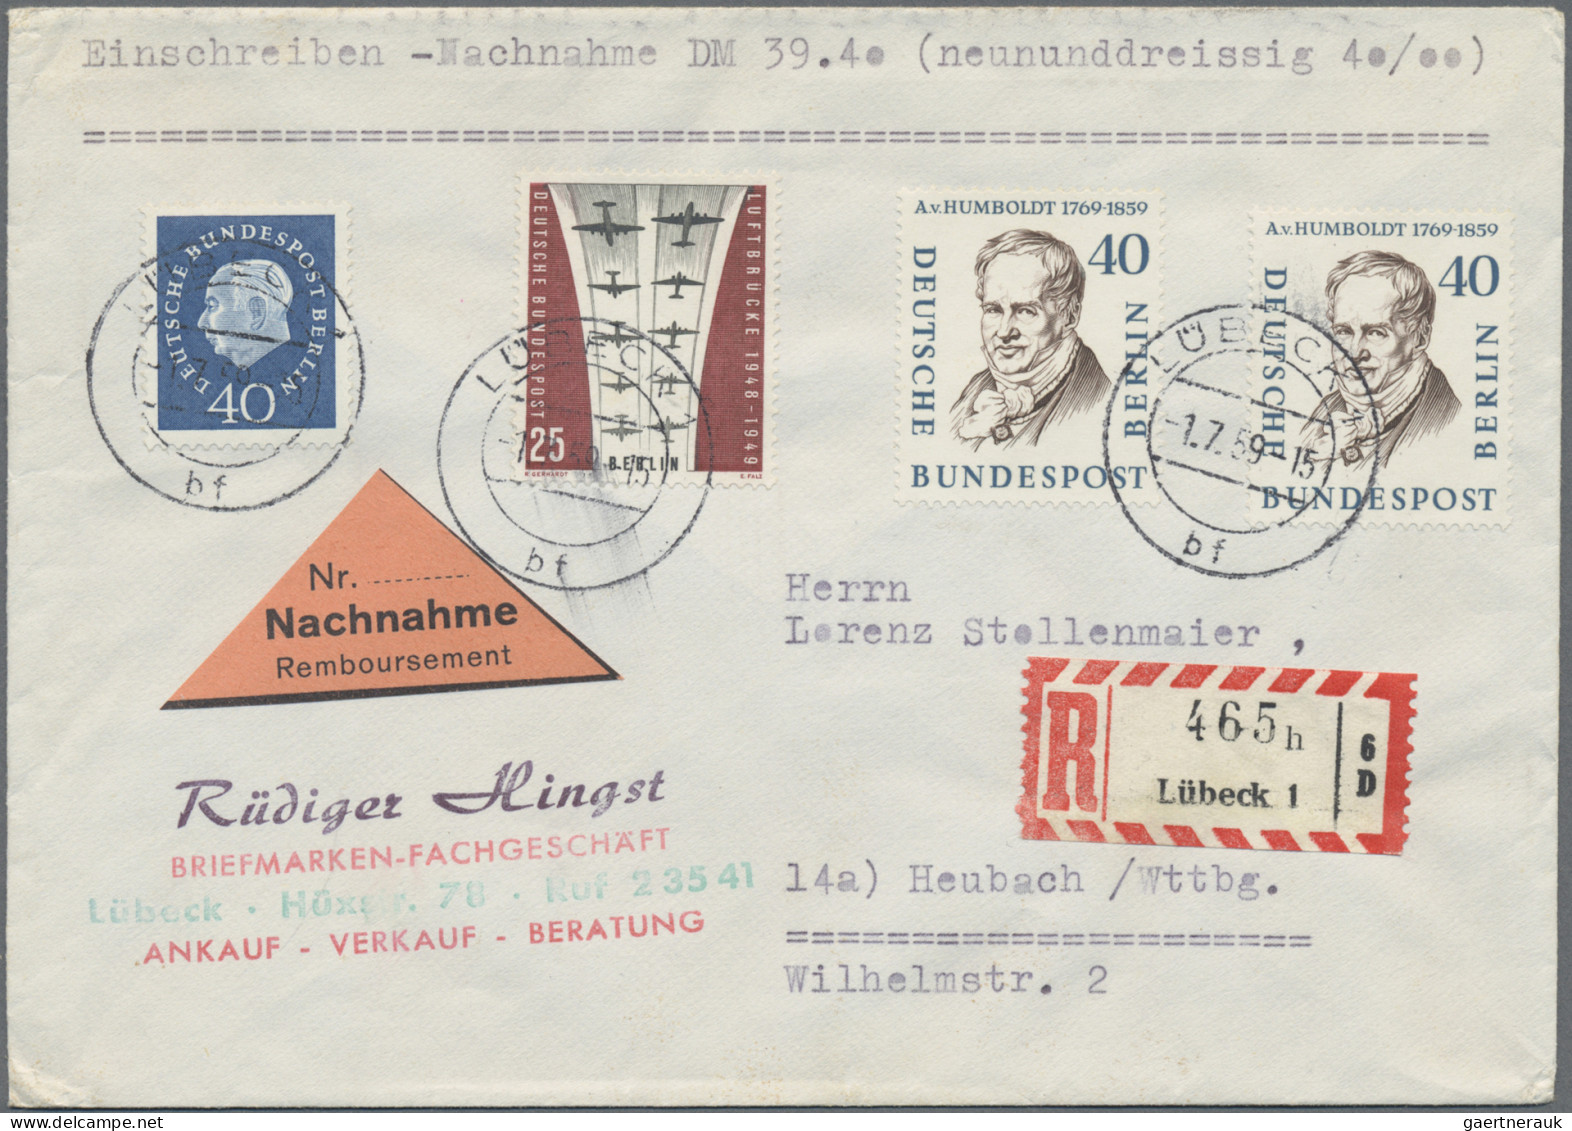 Berlin: 1949/1964, Partie von 48 Briefen und Karten mit teils besseren Frankatur